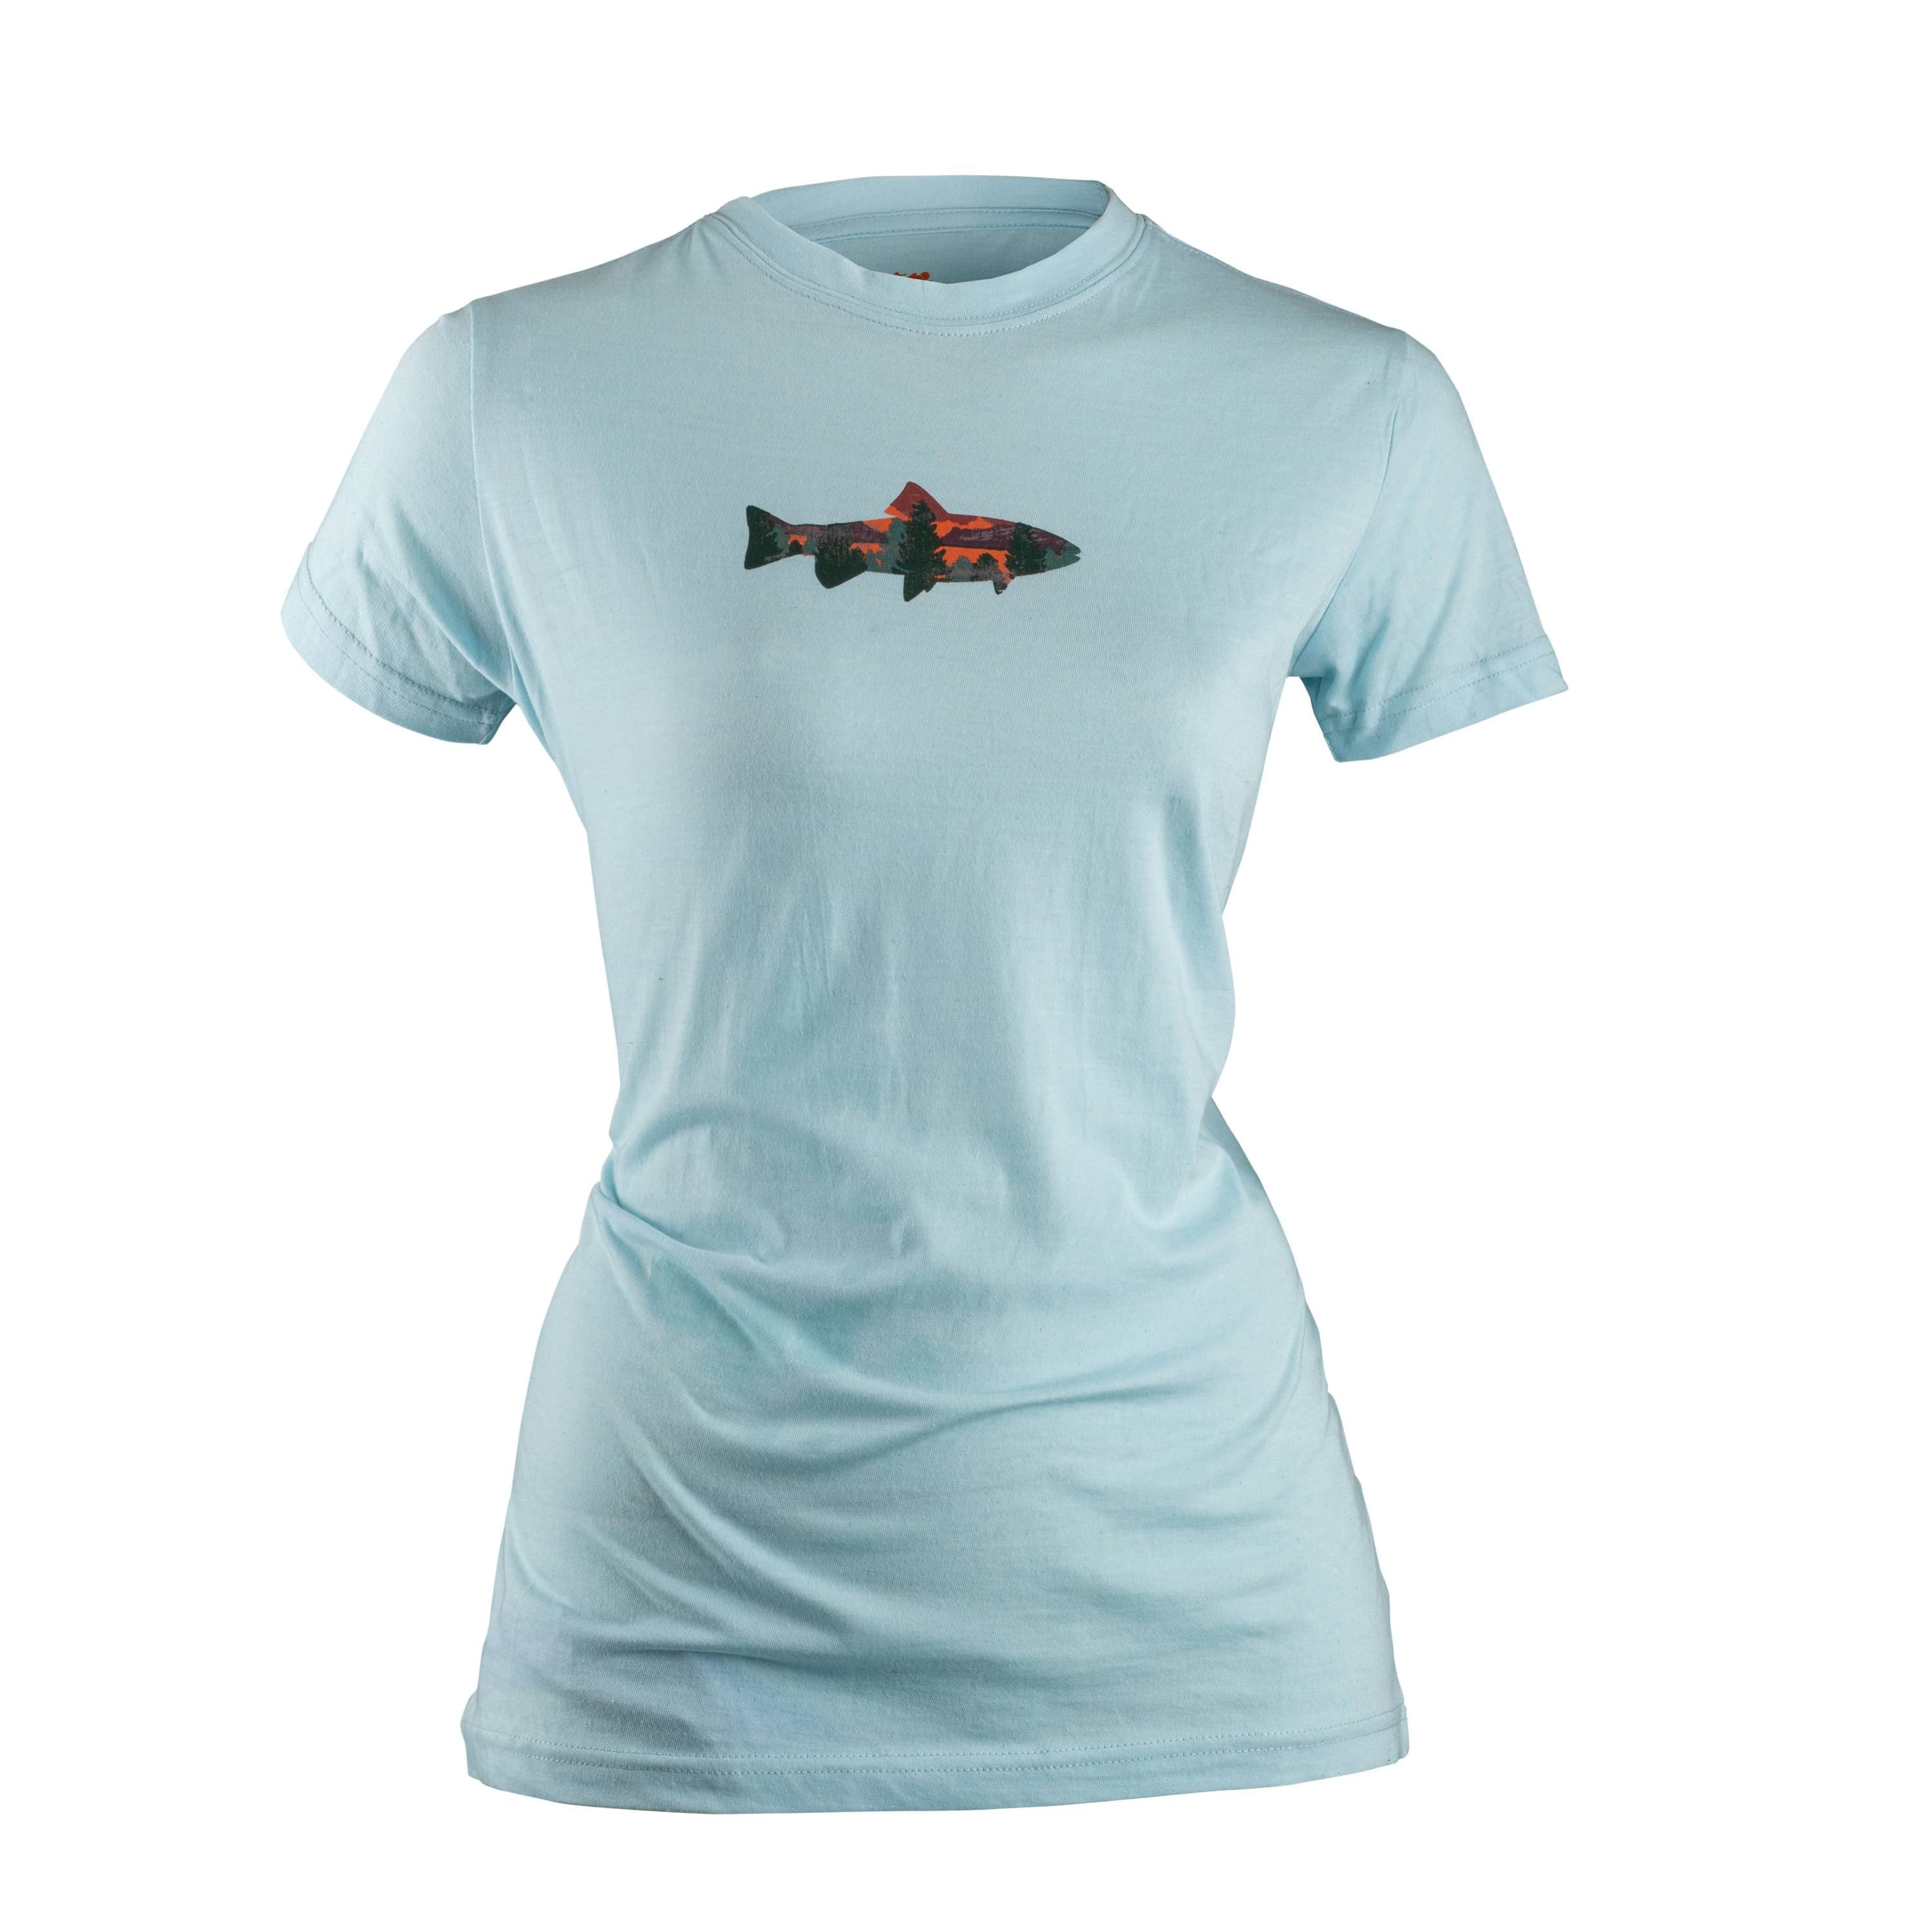 Fish T-shirt - Women's